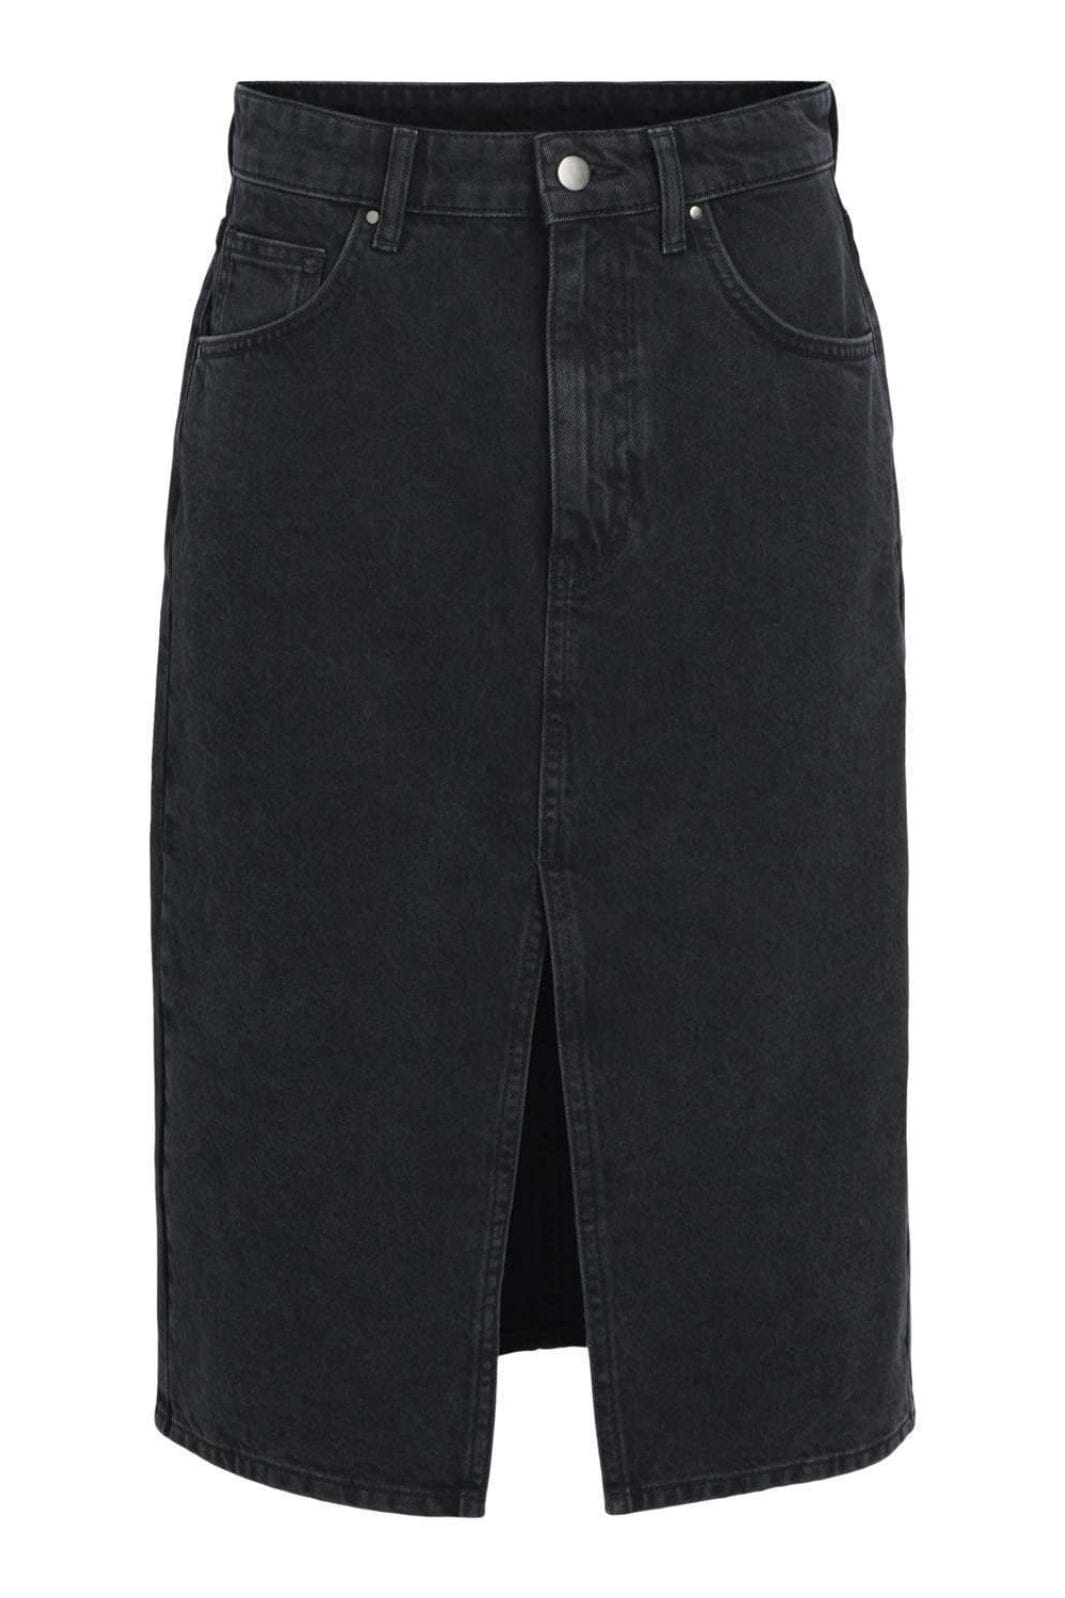 Object - Objharlow Midi Denim Skirt - 4464887 Black Nederdele 